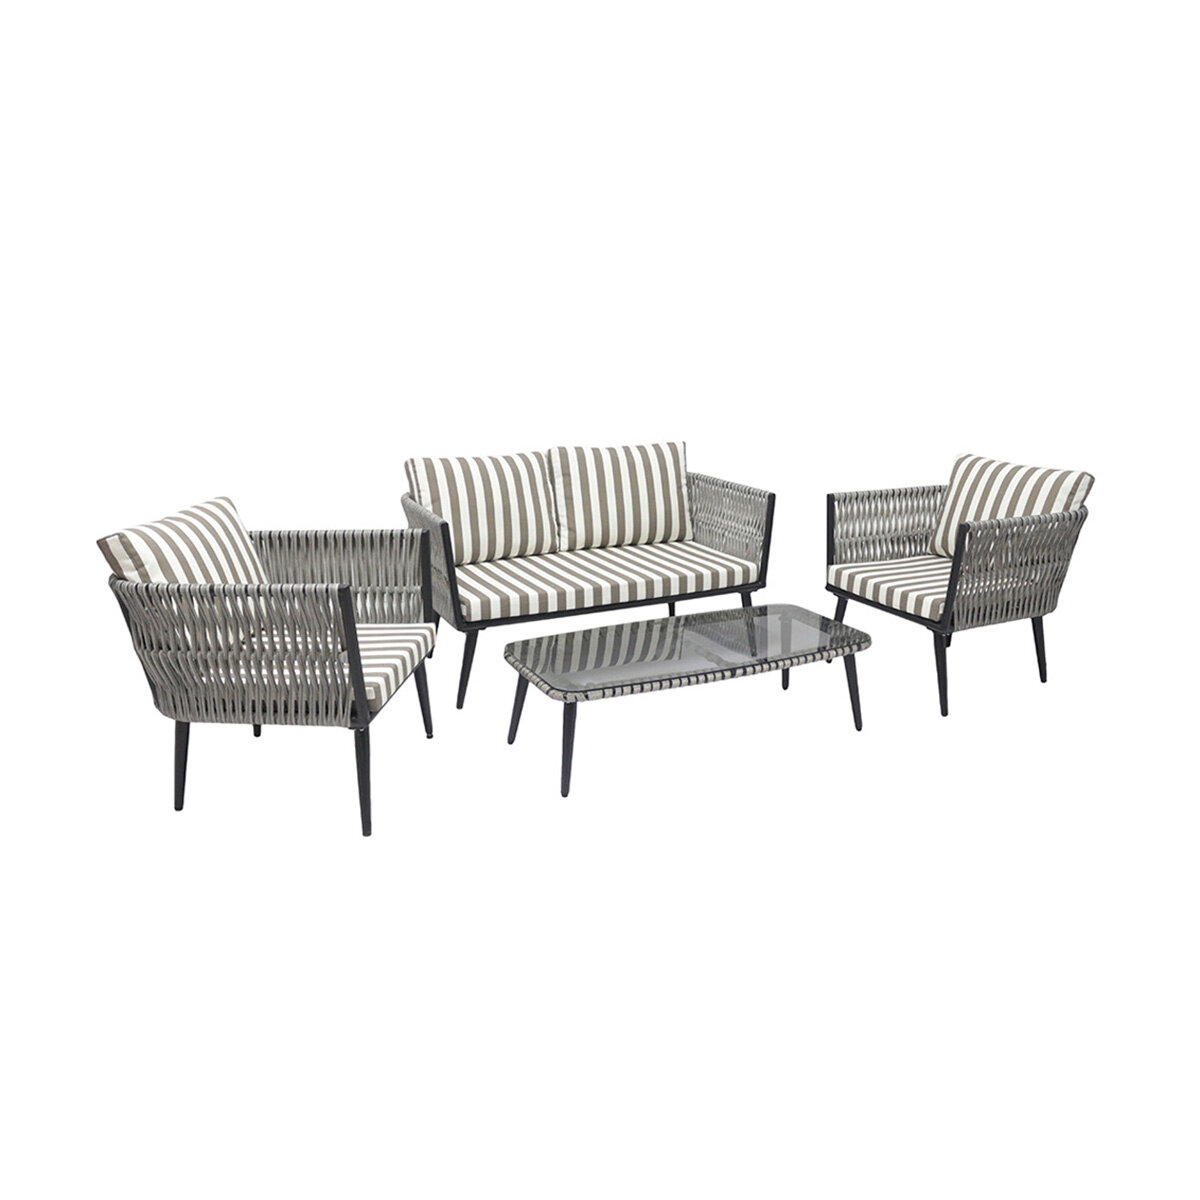 Комплект садовой мебели Alfart Tinto3 (2 кресла 1 диван 1 стол) графит